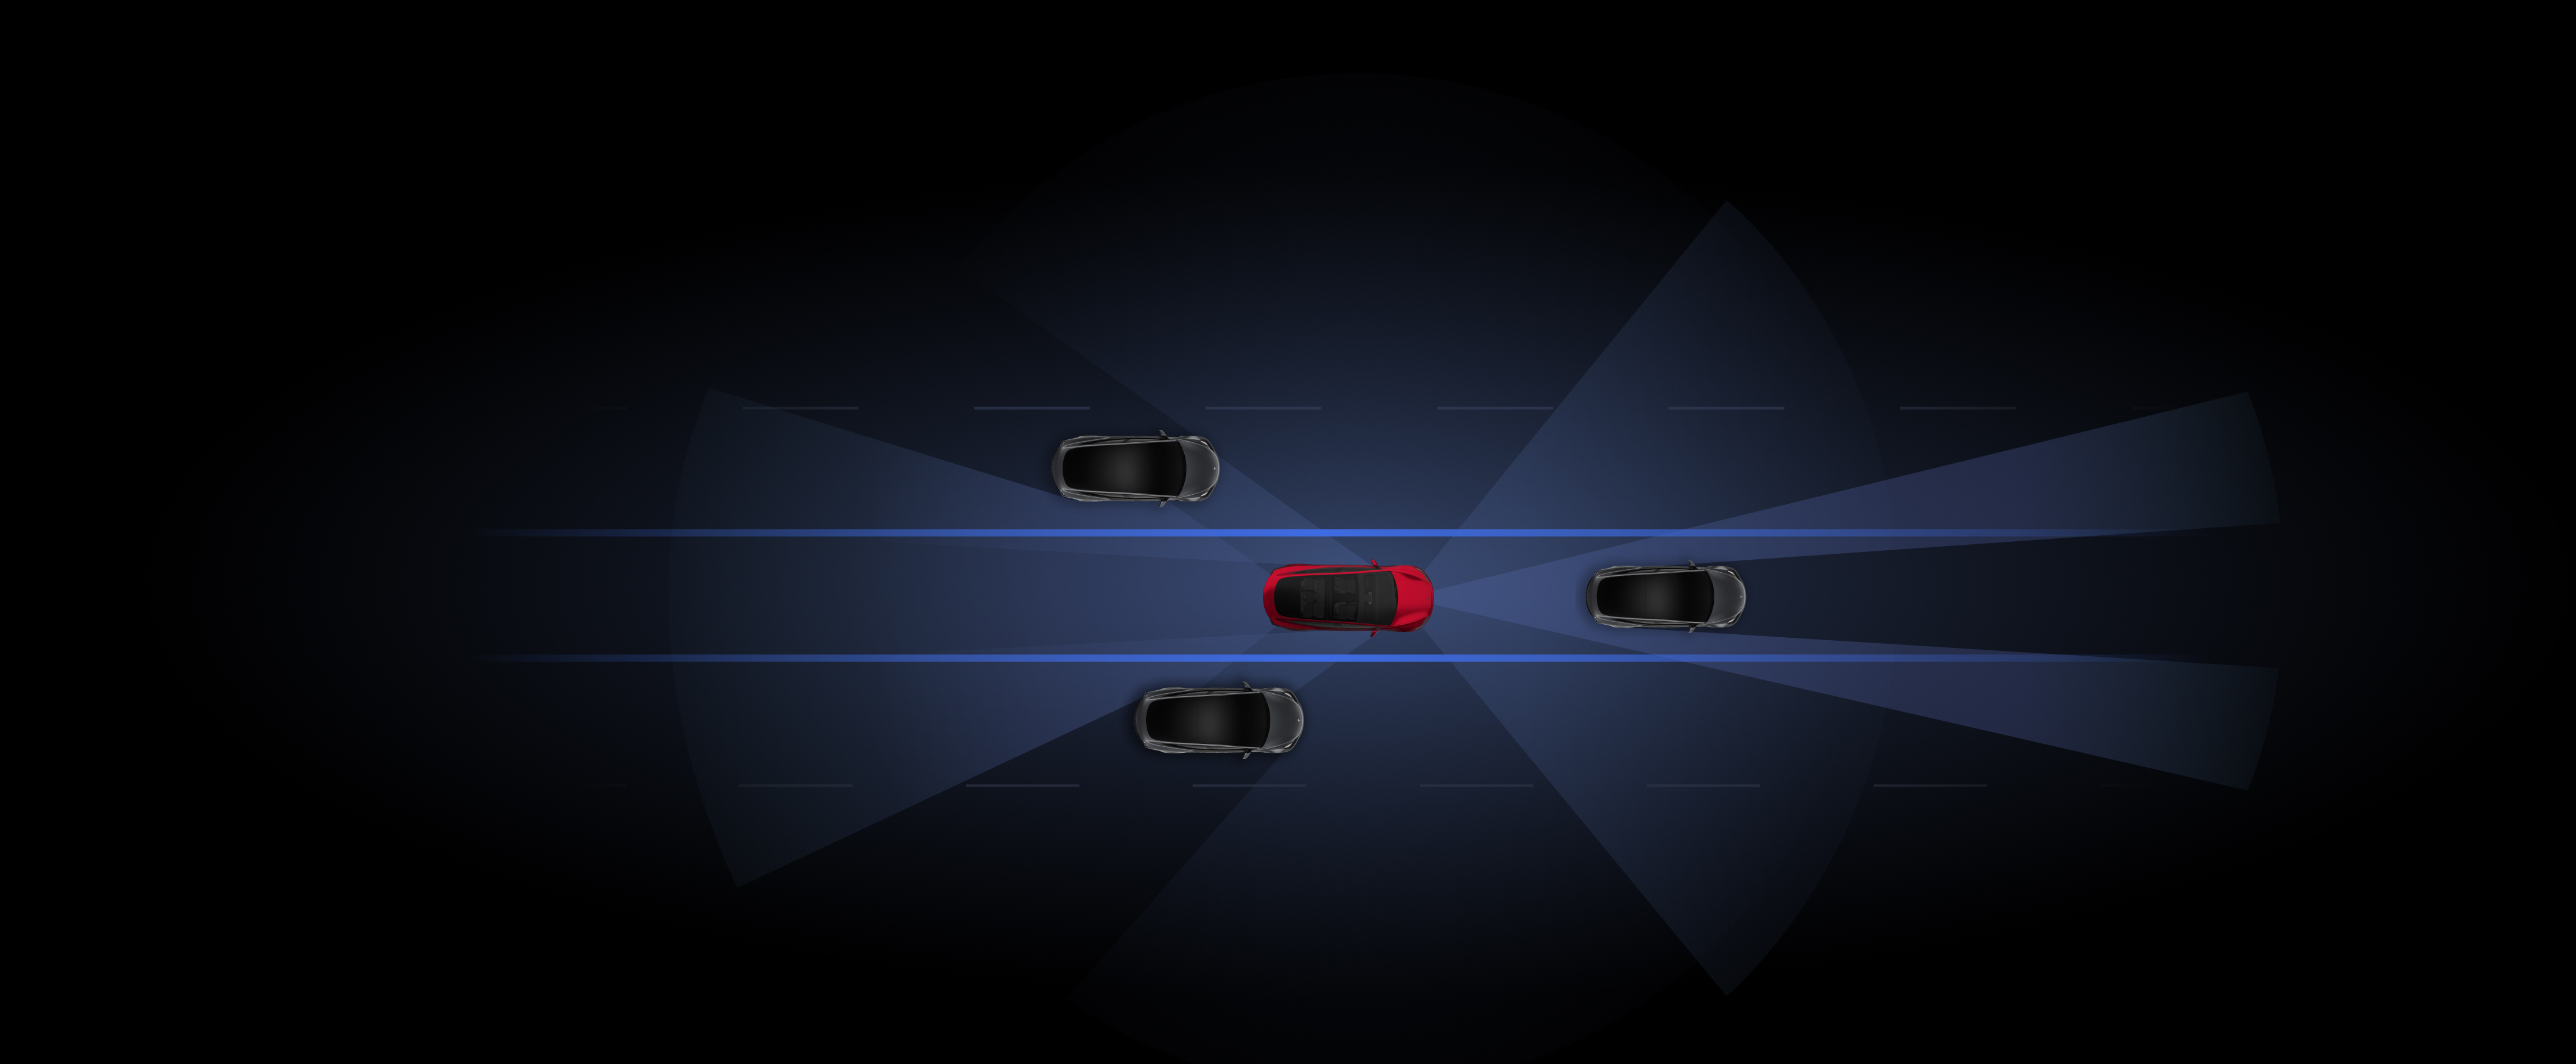 تصور منشأ لسيارات Tesla باللونين الرمادي والأحمر وتستخدم ميزات Autopilot. 